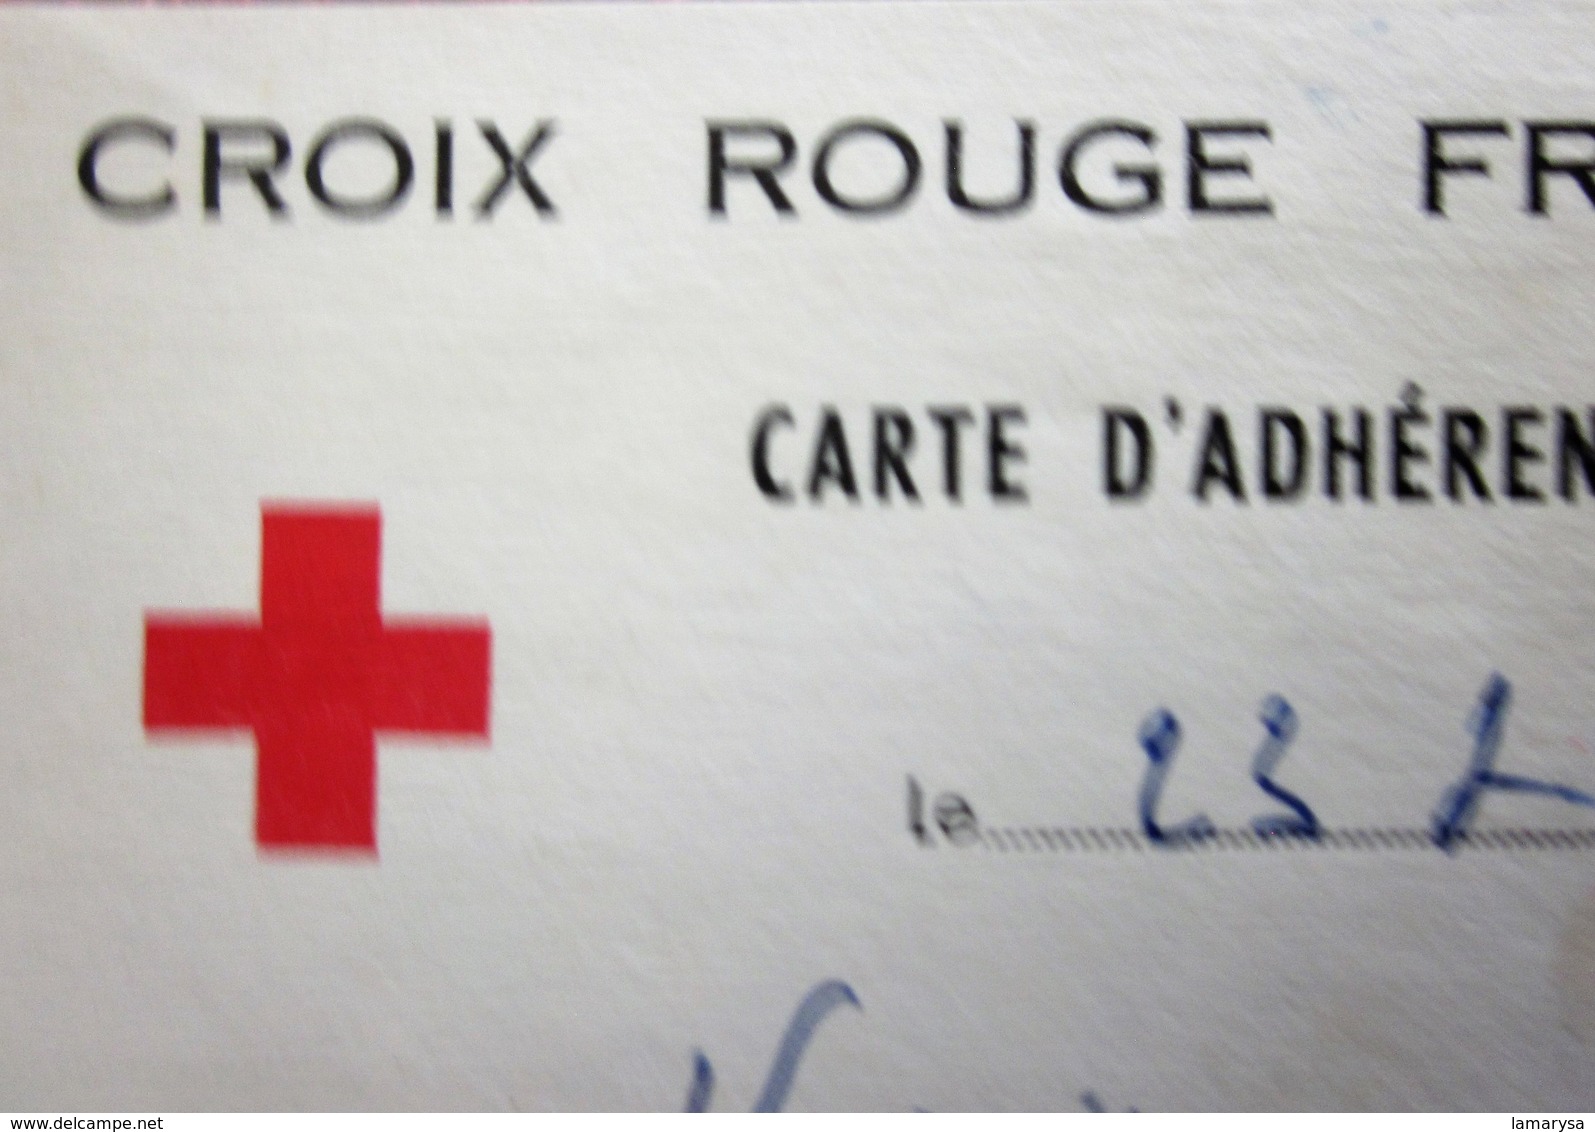 1958 CARTE ADHÉRENT Timbres  Europe  France  Erinnophilie  2 Vignettes Ligue Internationale De La Croix Rouge Française - Red Cross